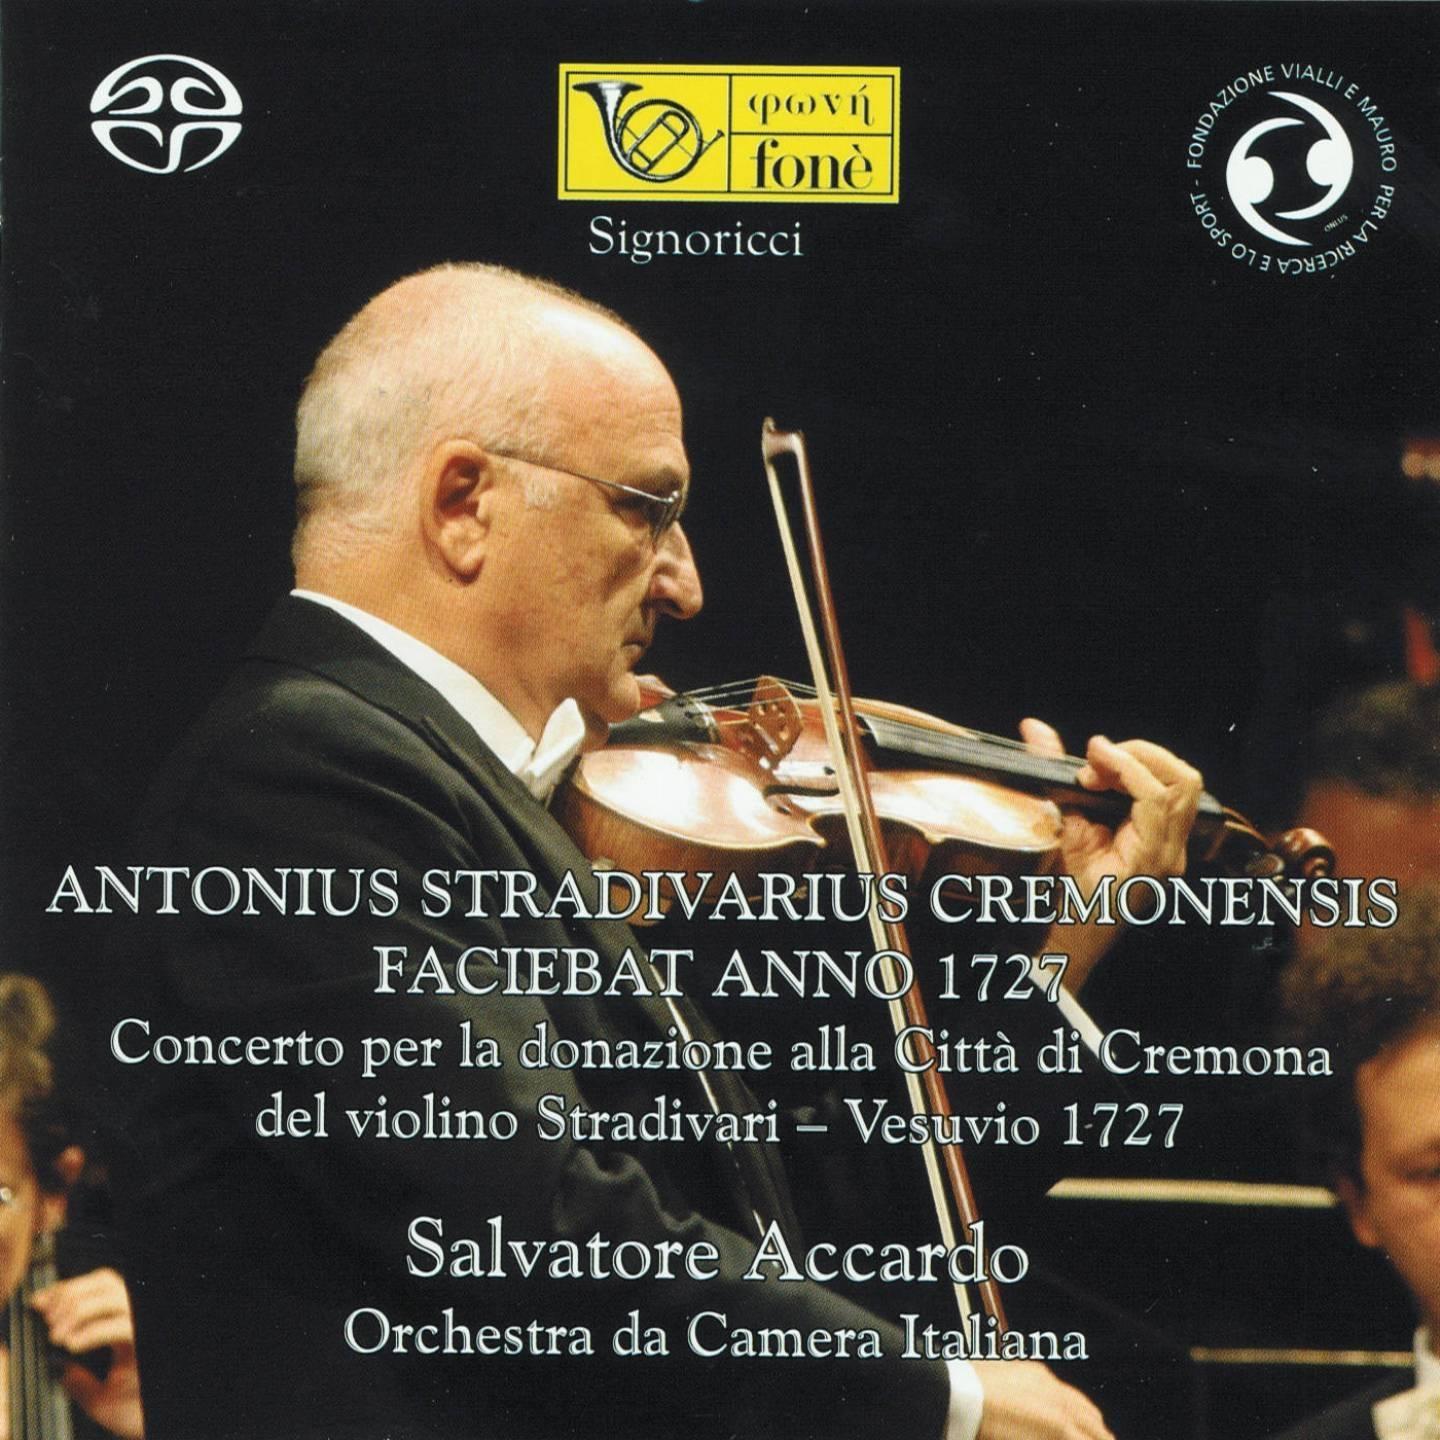 Concerto per la donazione alla Citta di Cremona del violino StradivariVesuvio, 1727